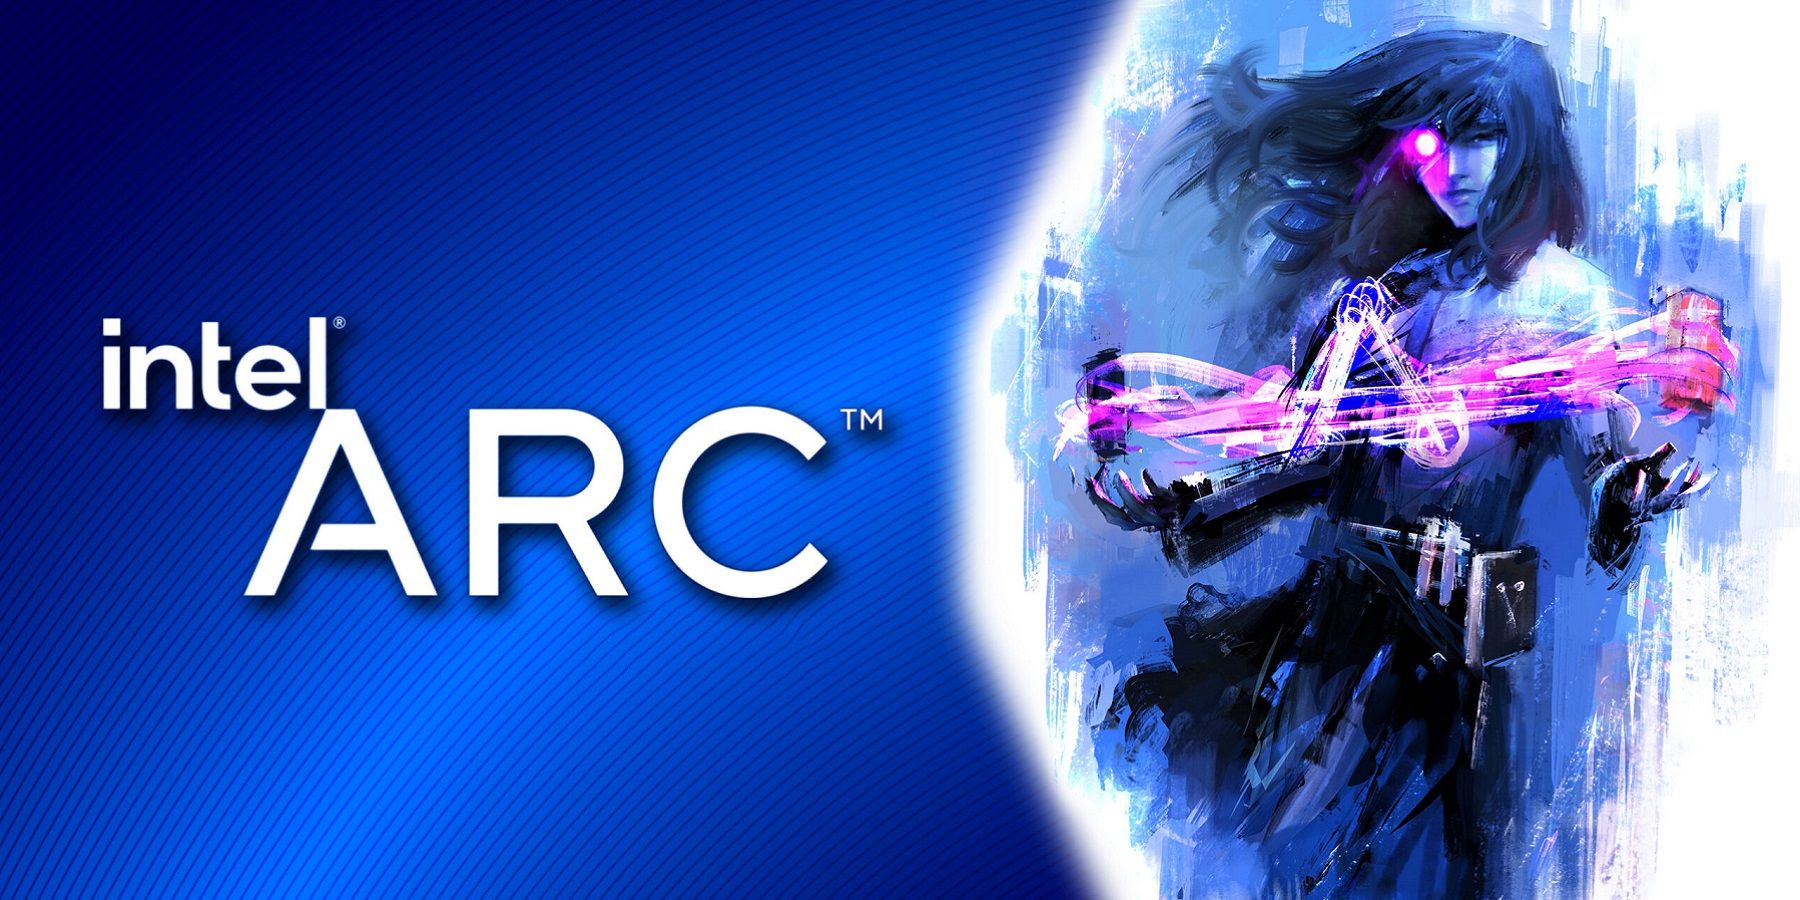 Intel Arc logo on a blue background.